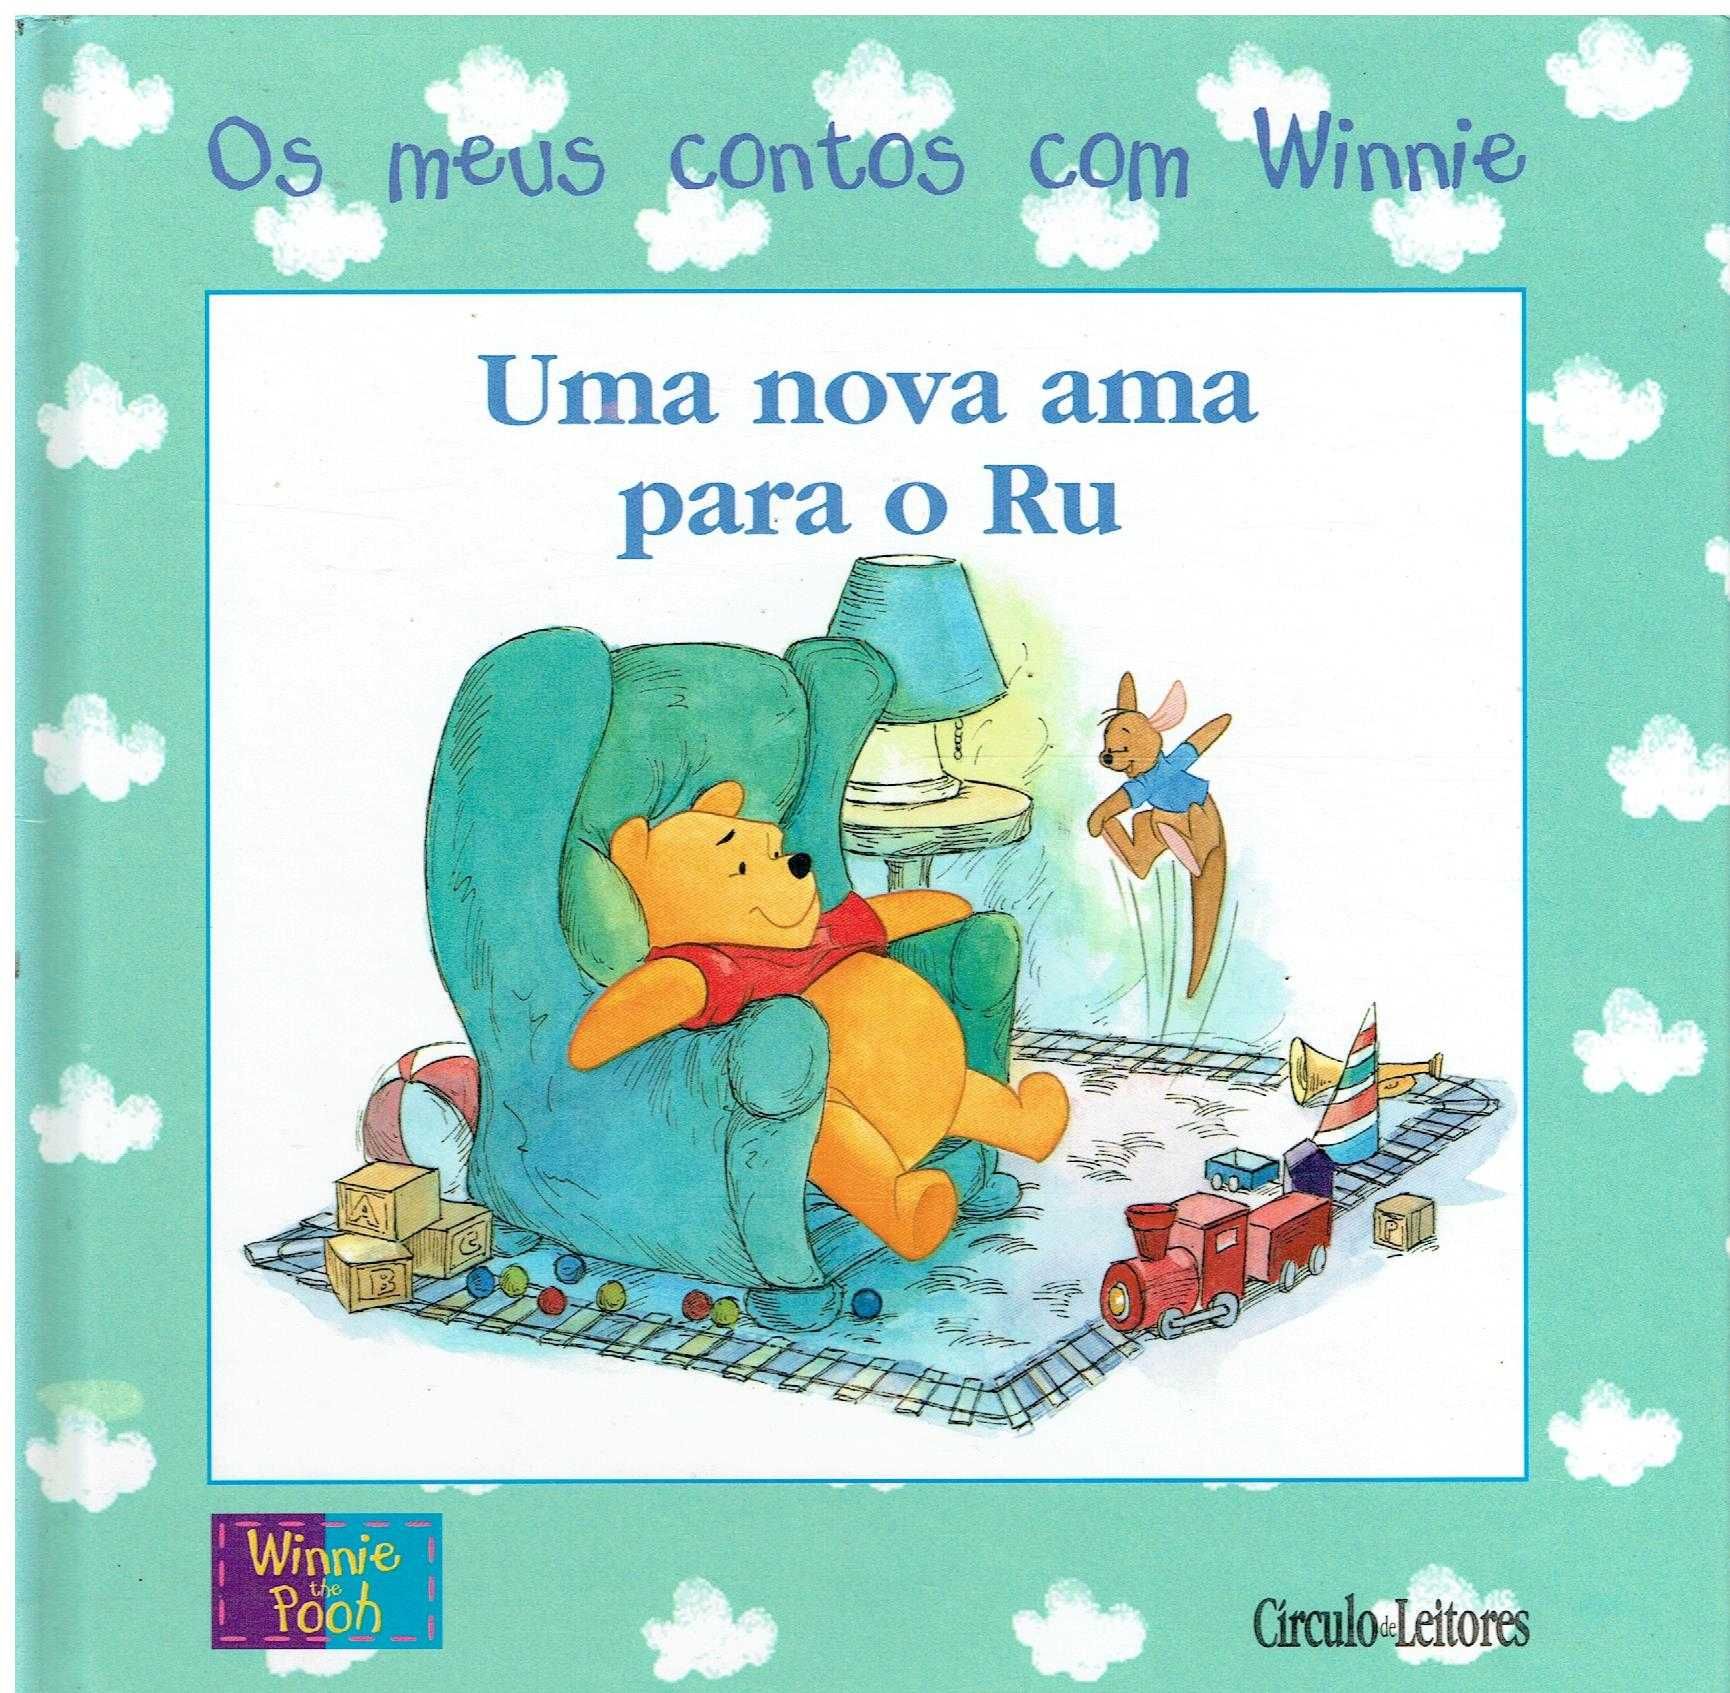 12576

Winnie the Pooh - Uma nova ama para o Ru